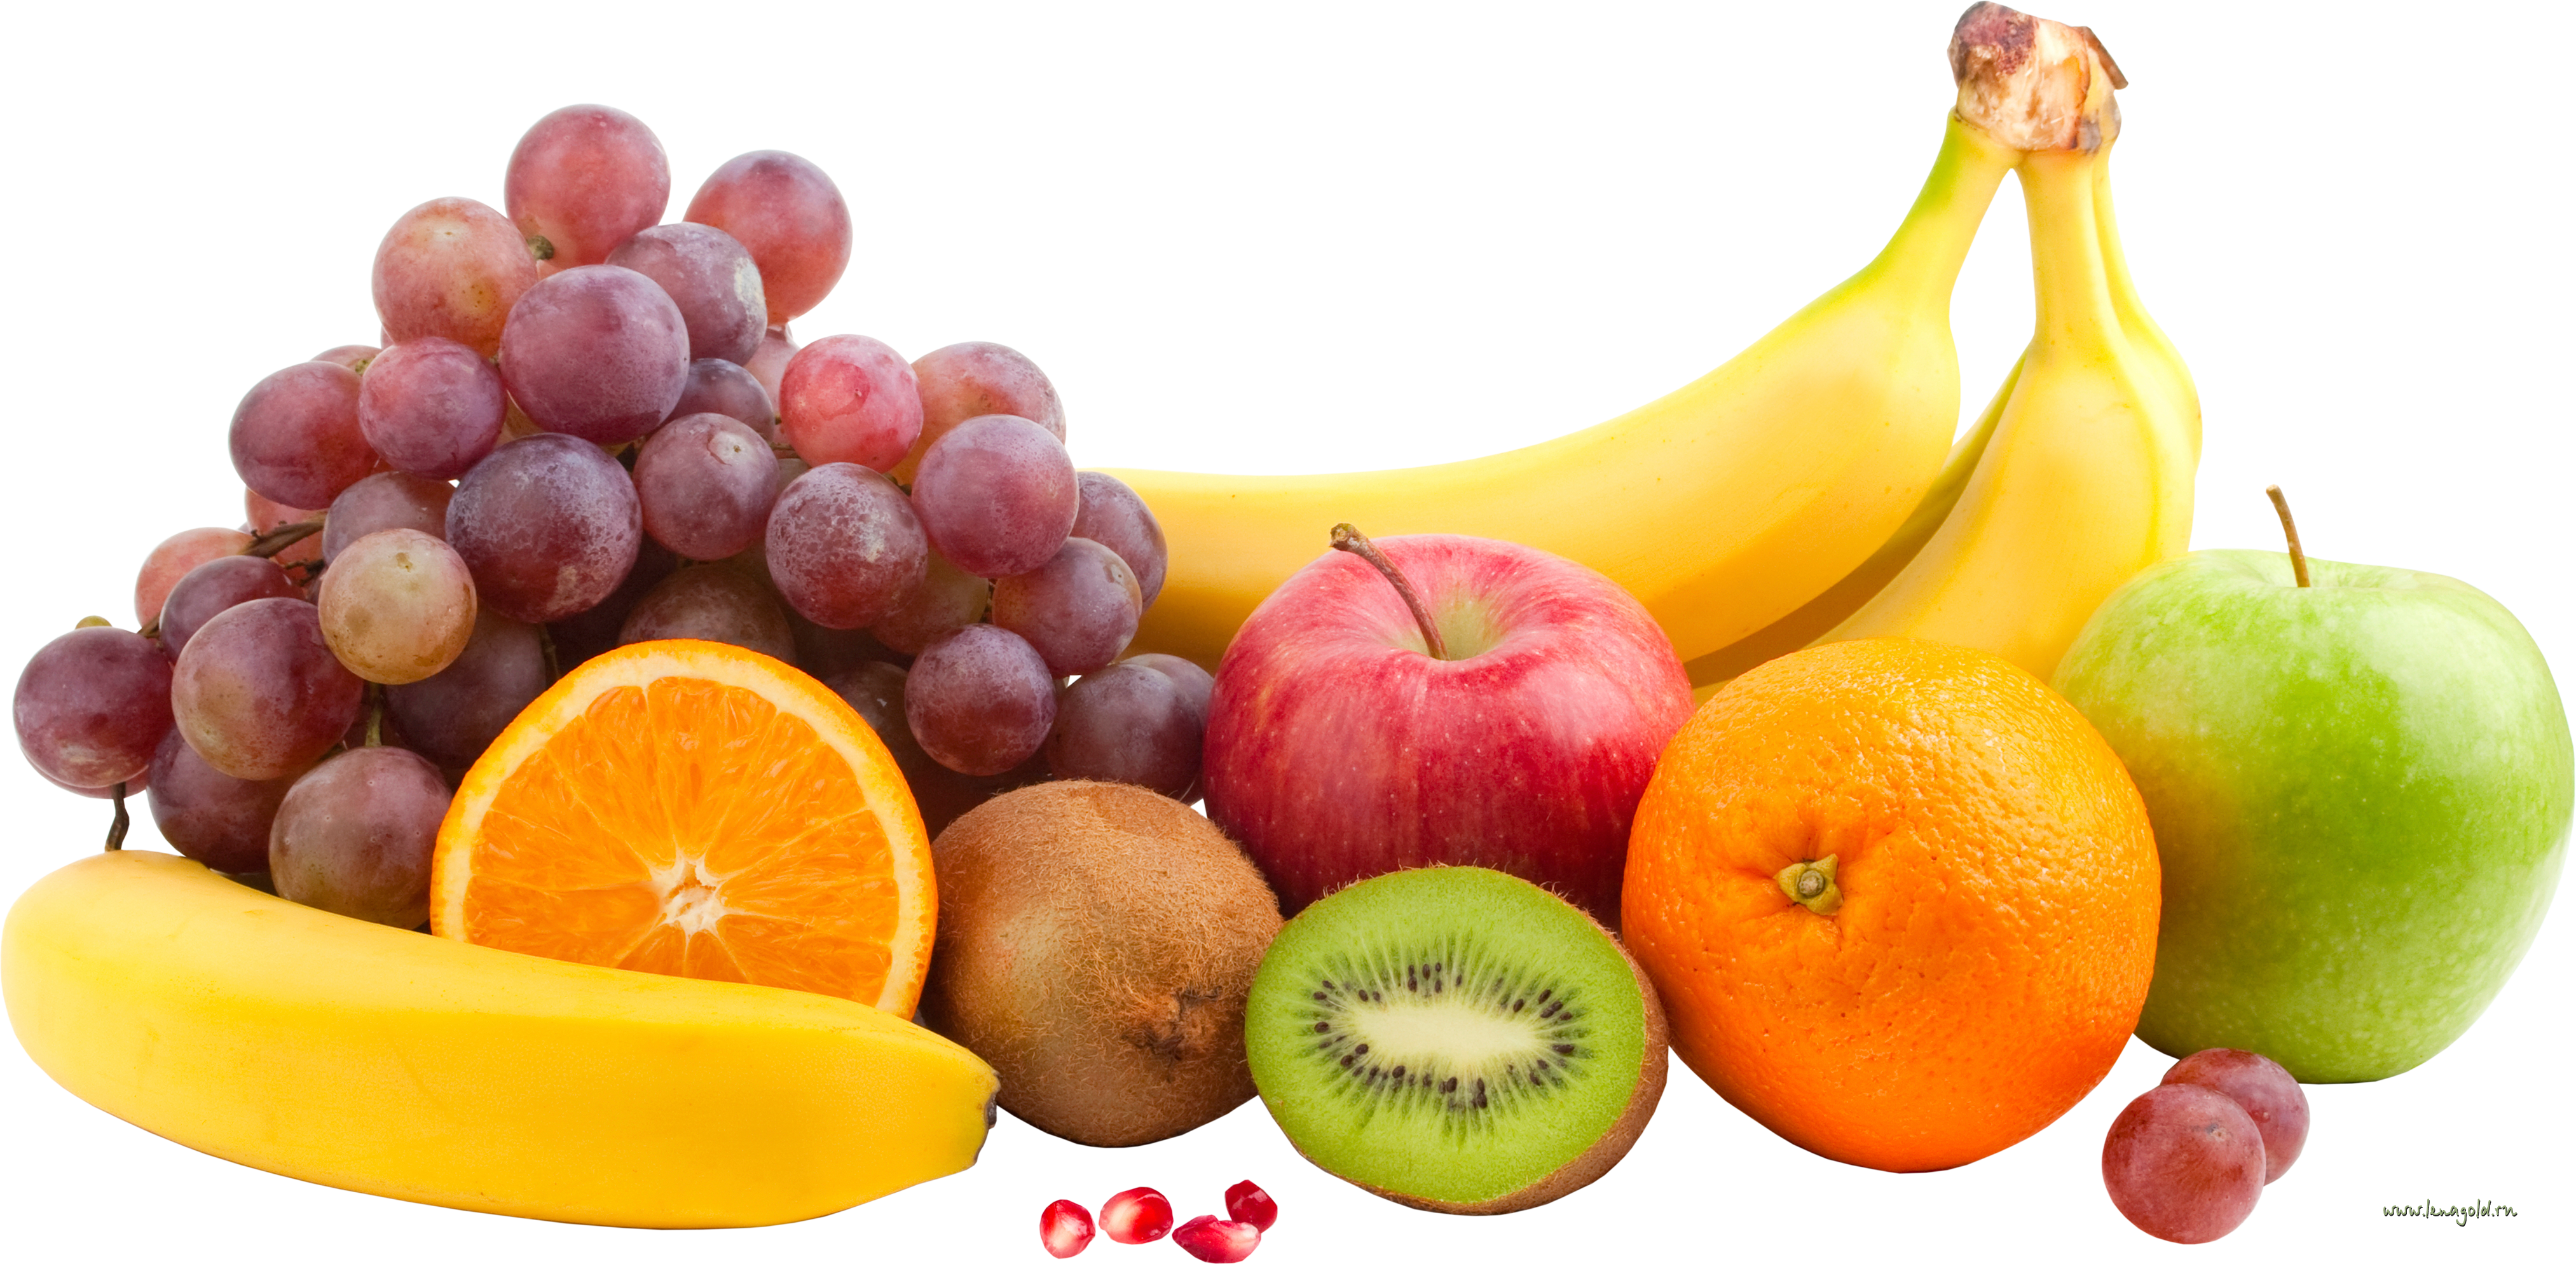  фрукты биологии  яблоки анасы фрукты киви груша